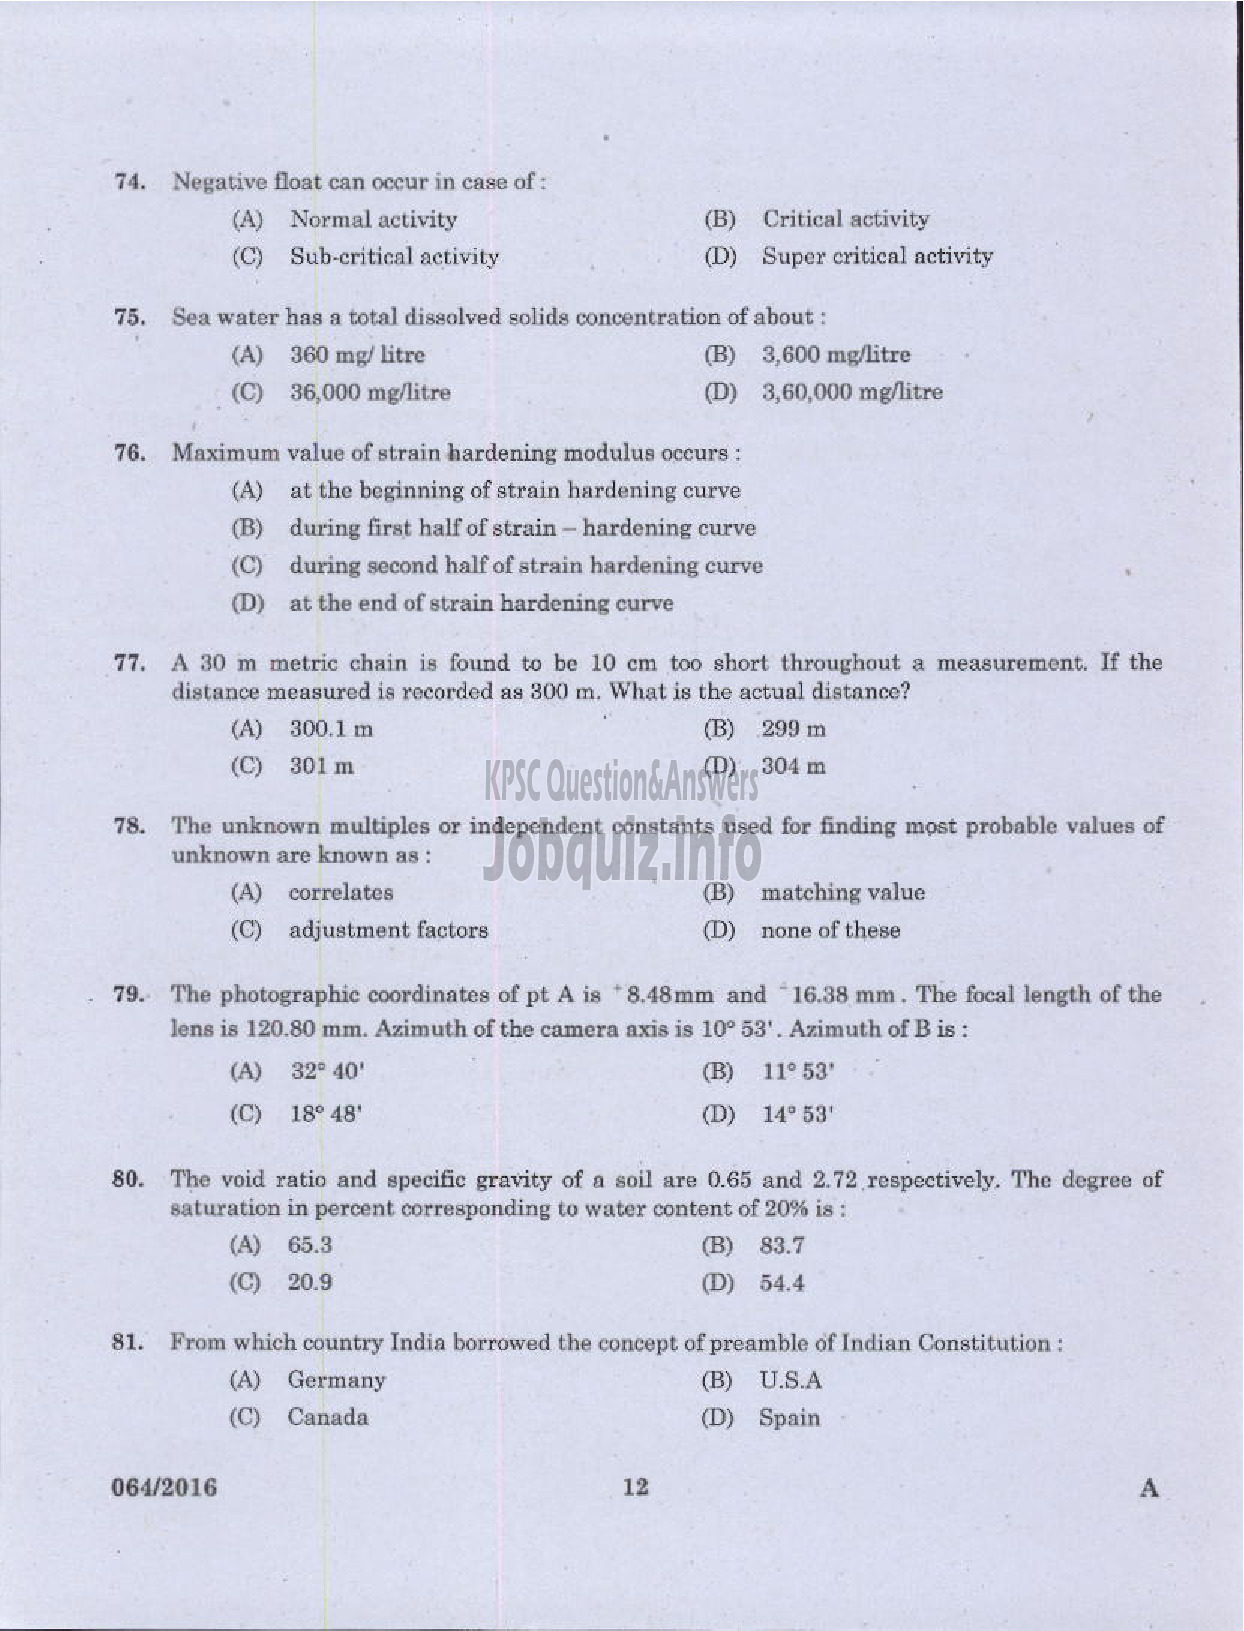 Kerala PSC Question Paper - VOCATIONAL TEACHER CIVIL CONSTRUCTION AND MAINTENANCE VHSE-10